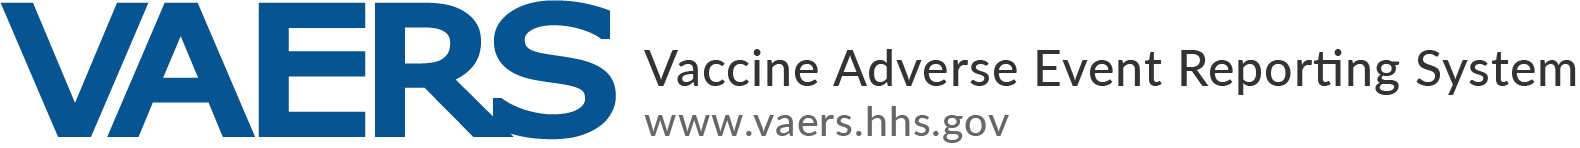 Sistema para reportar eventos adversos a las vacunas